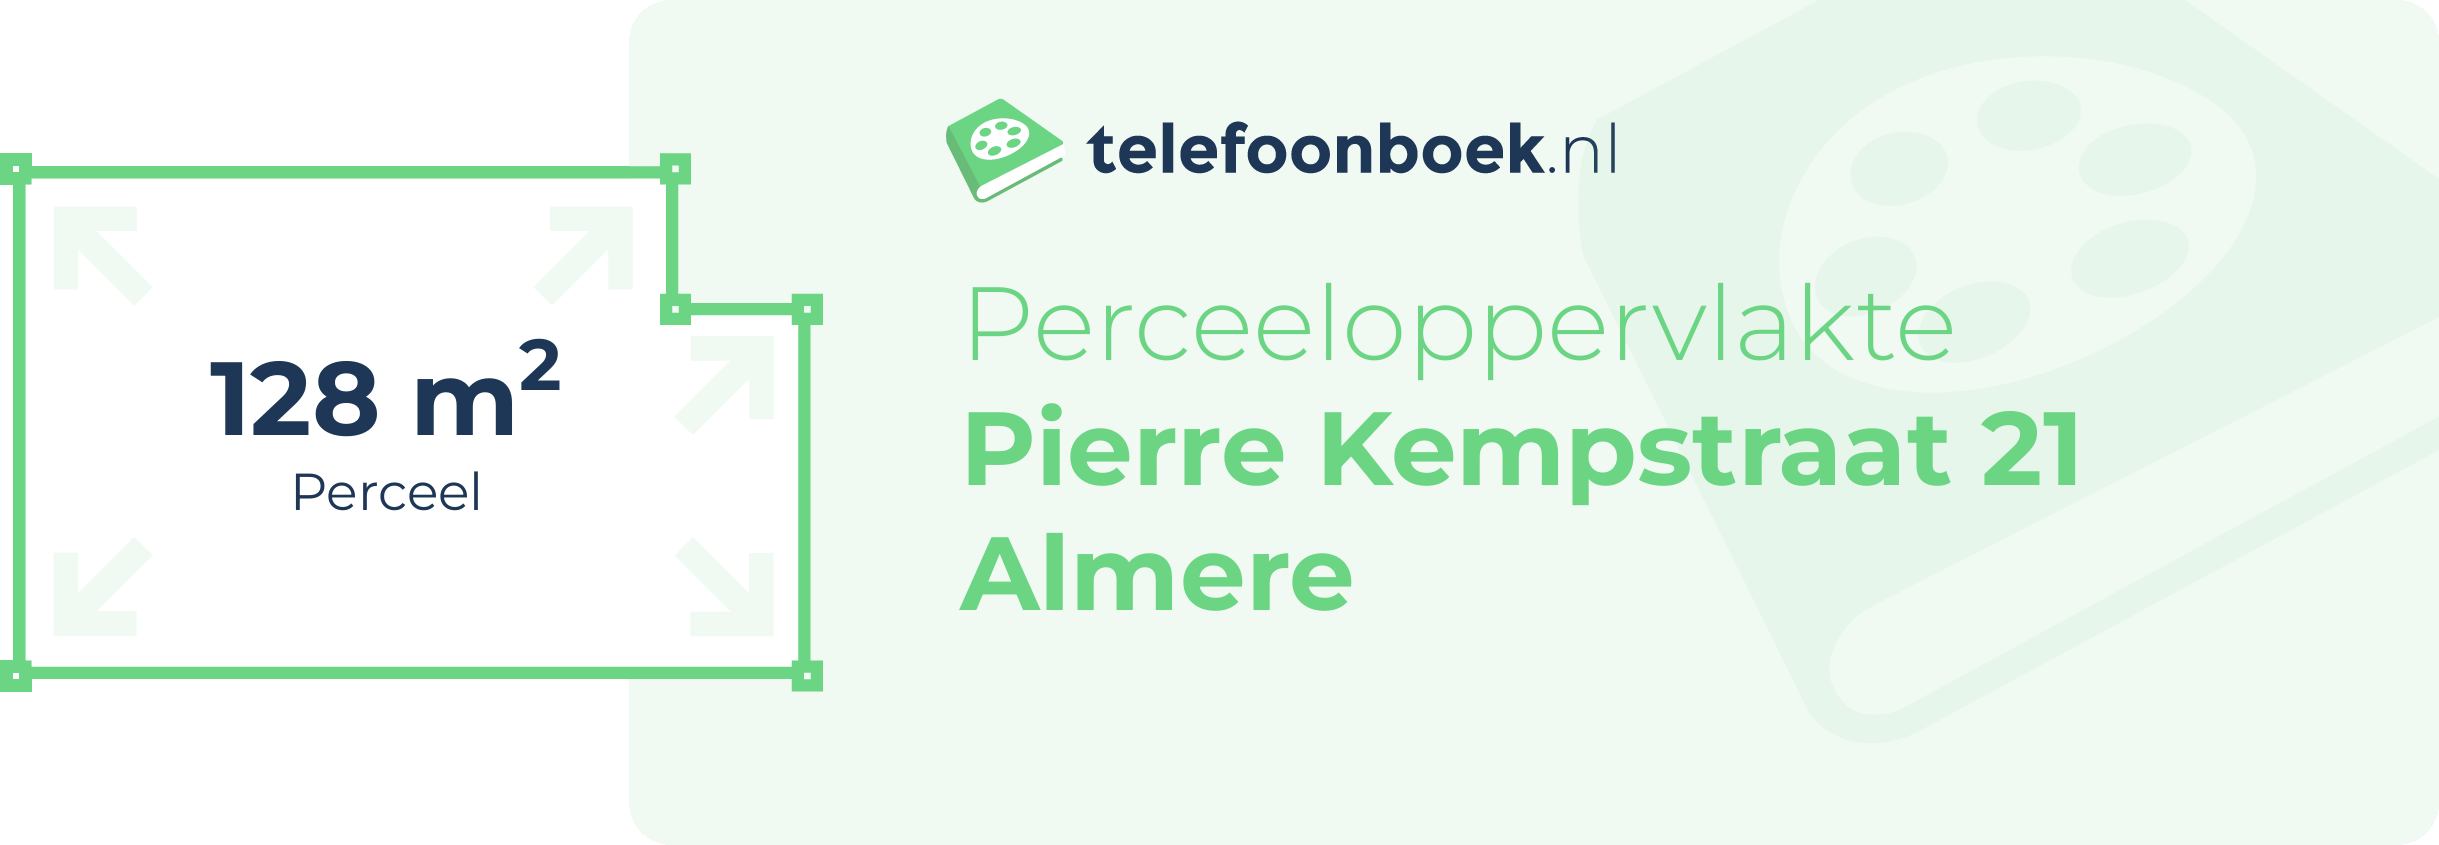 Perceeloppervlakte Pierre Kempstraat 21 Almere